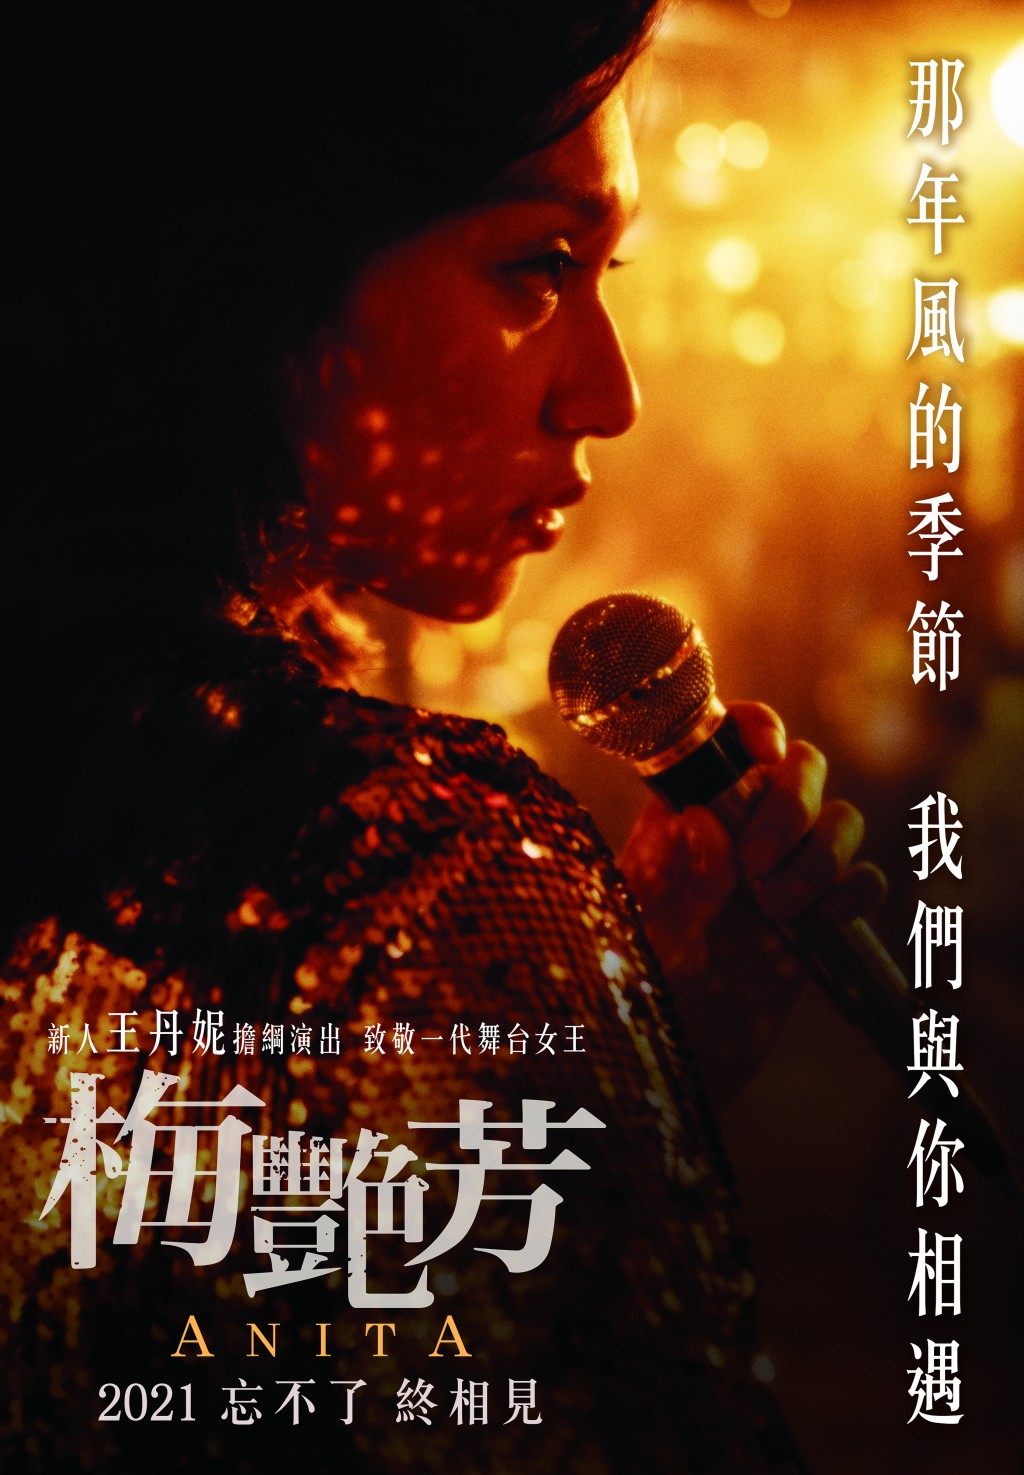 電影榮登香港華語電影最高票房第二位。